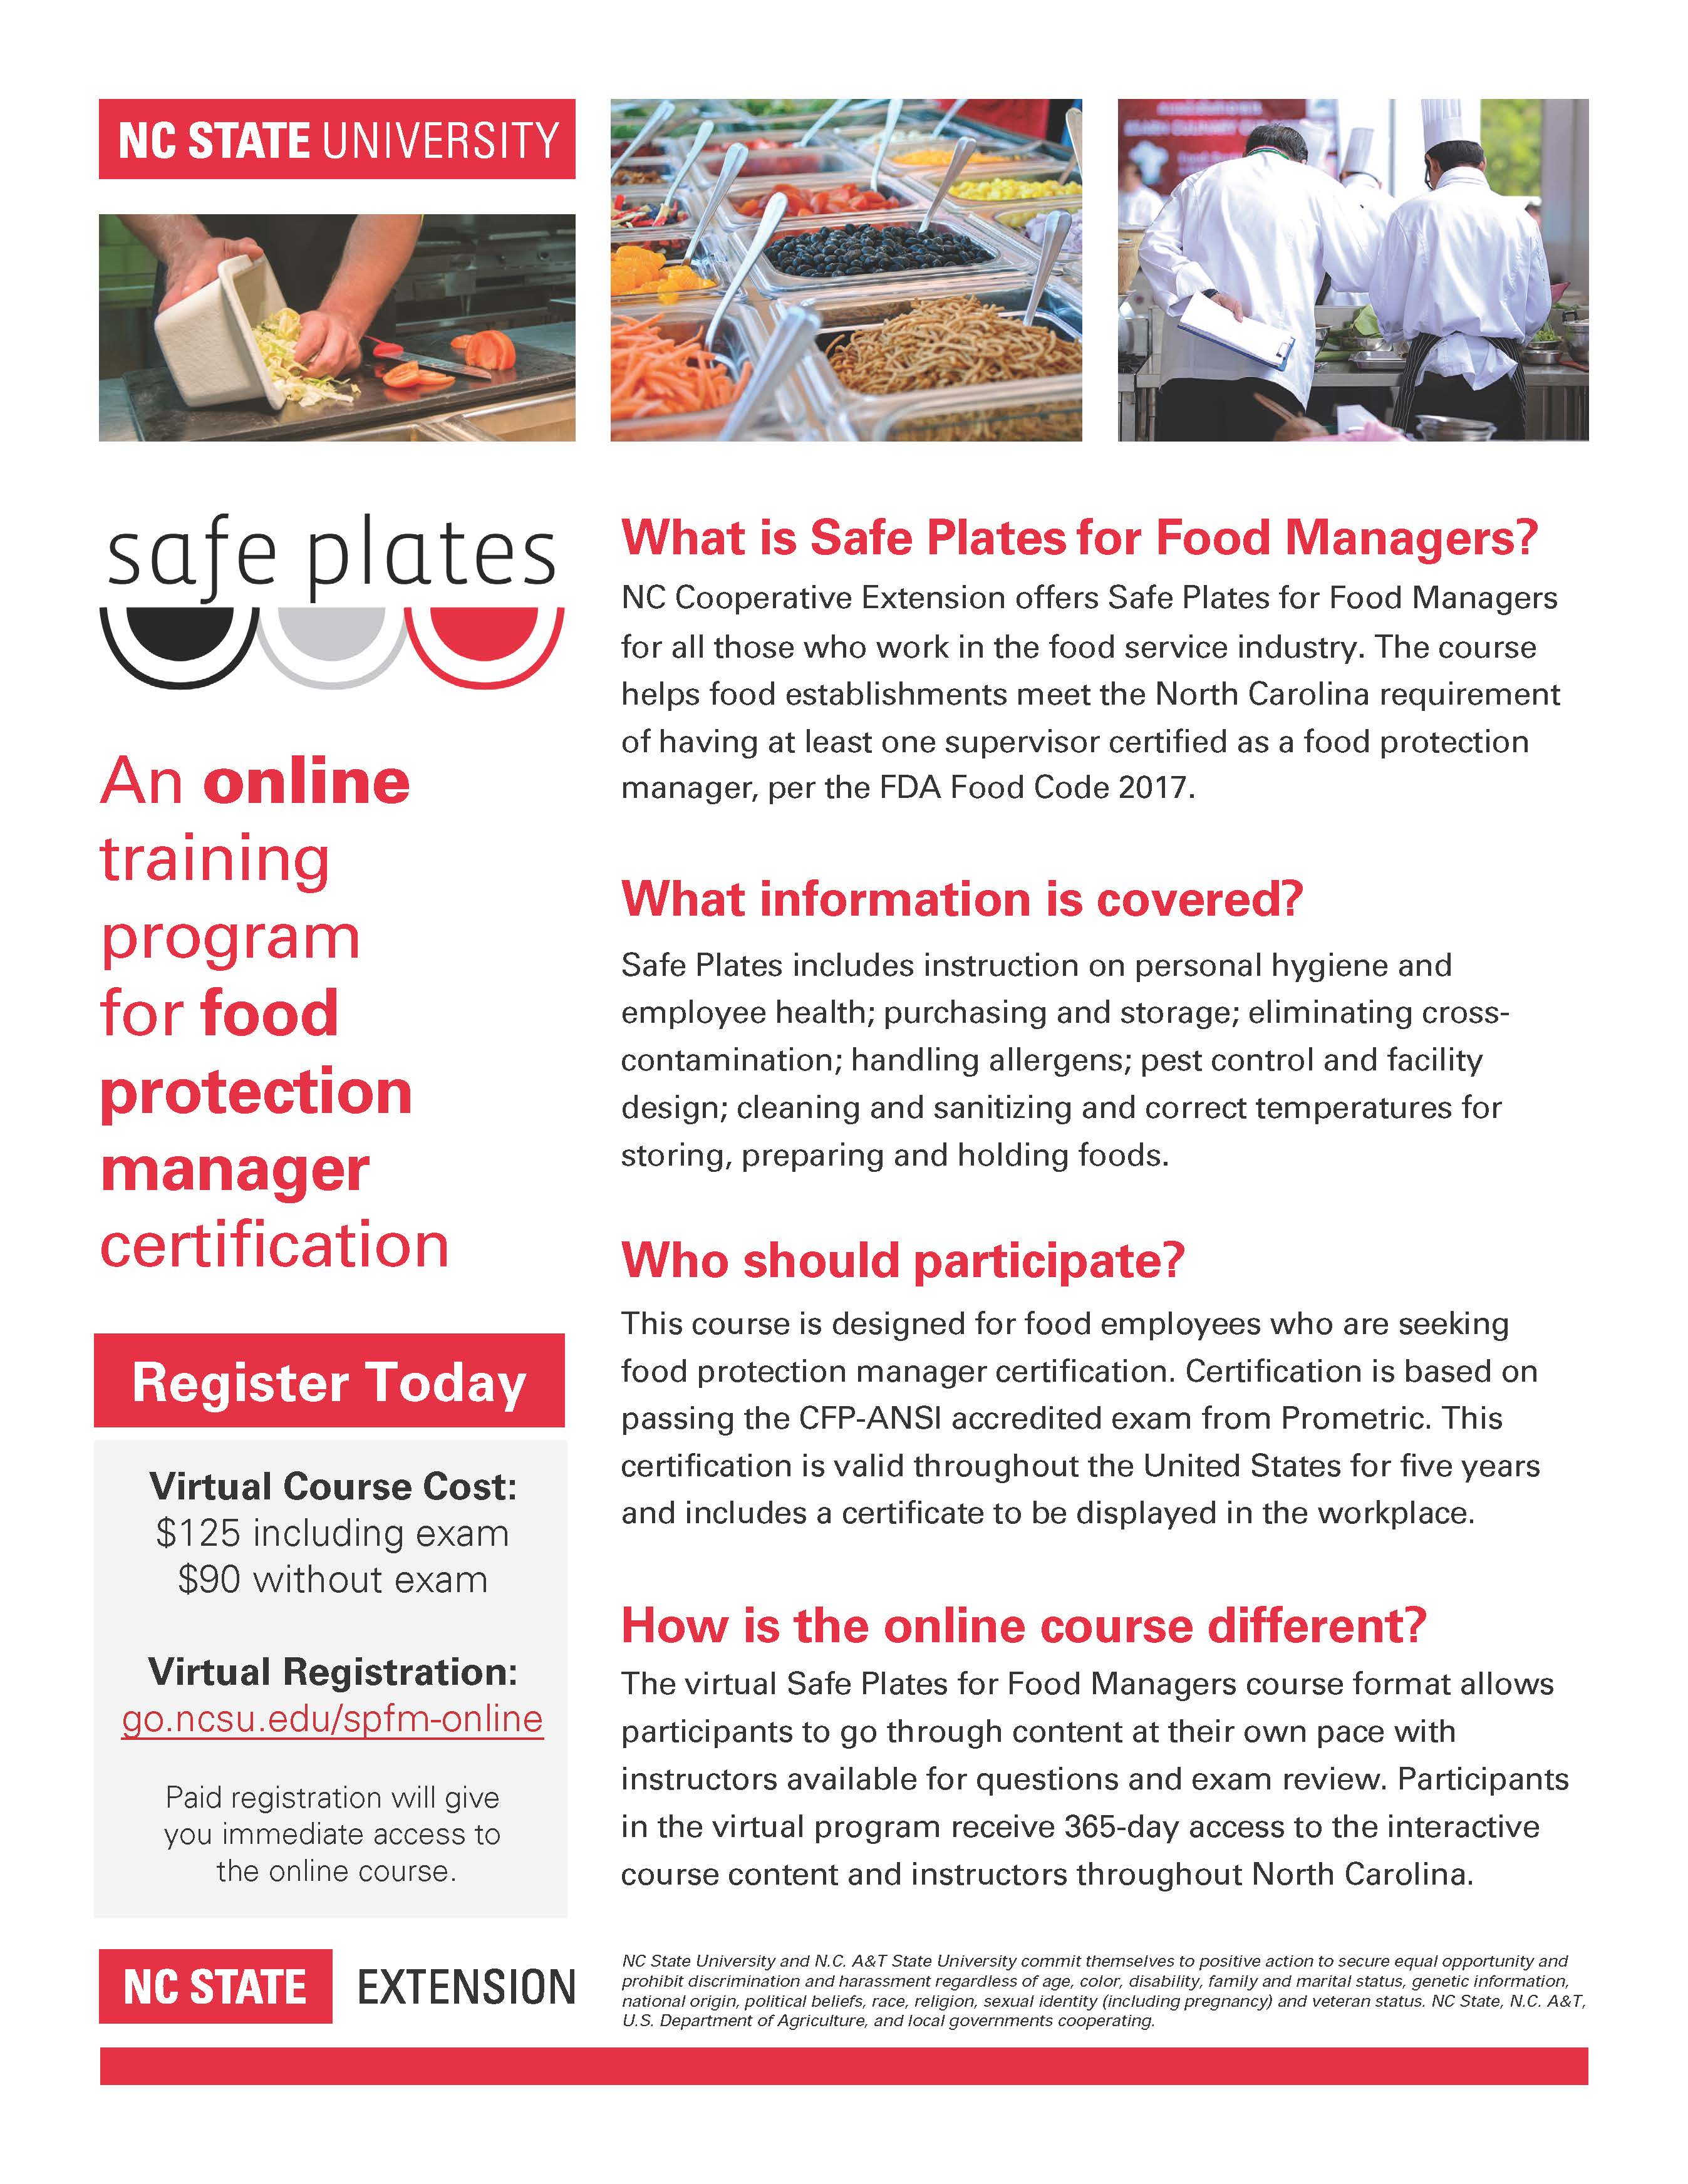 Online Safe Plates Food Manager Infosheet_Prometric_4.2021